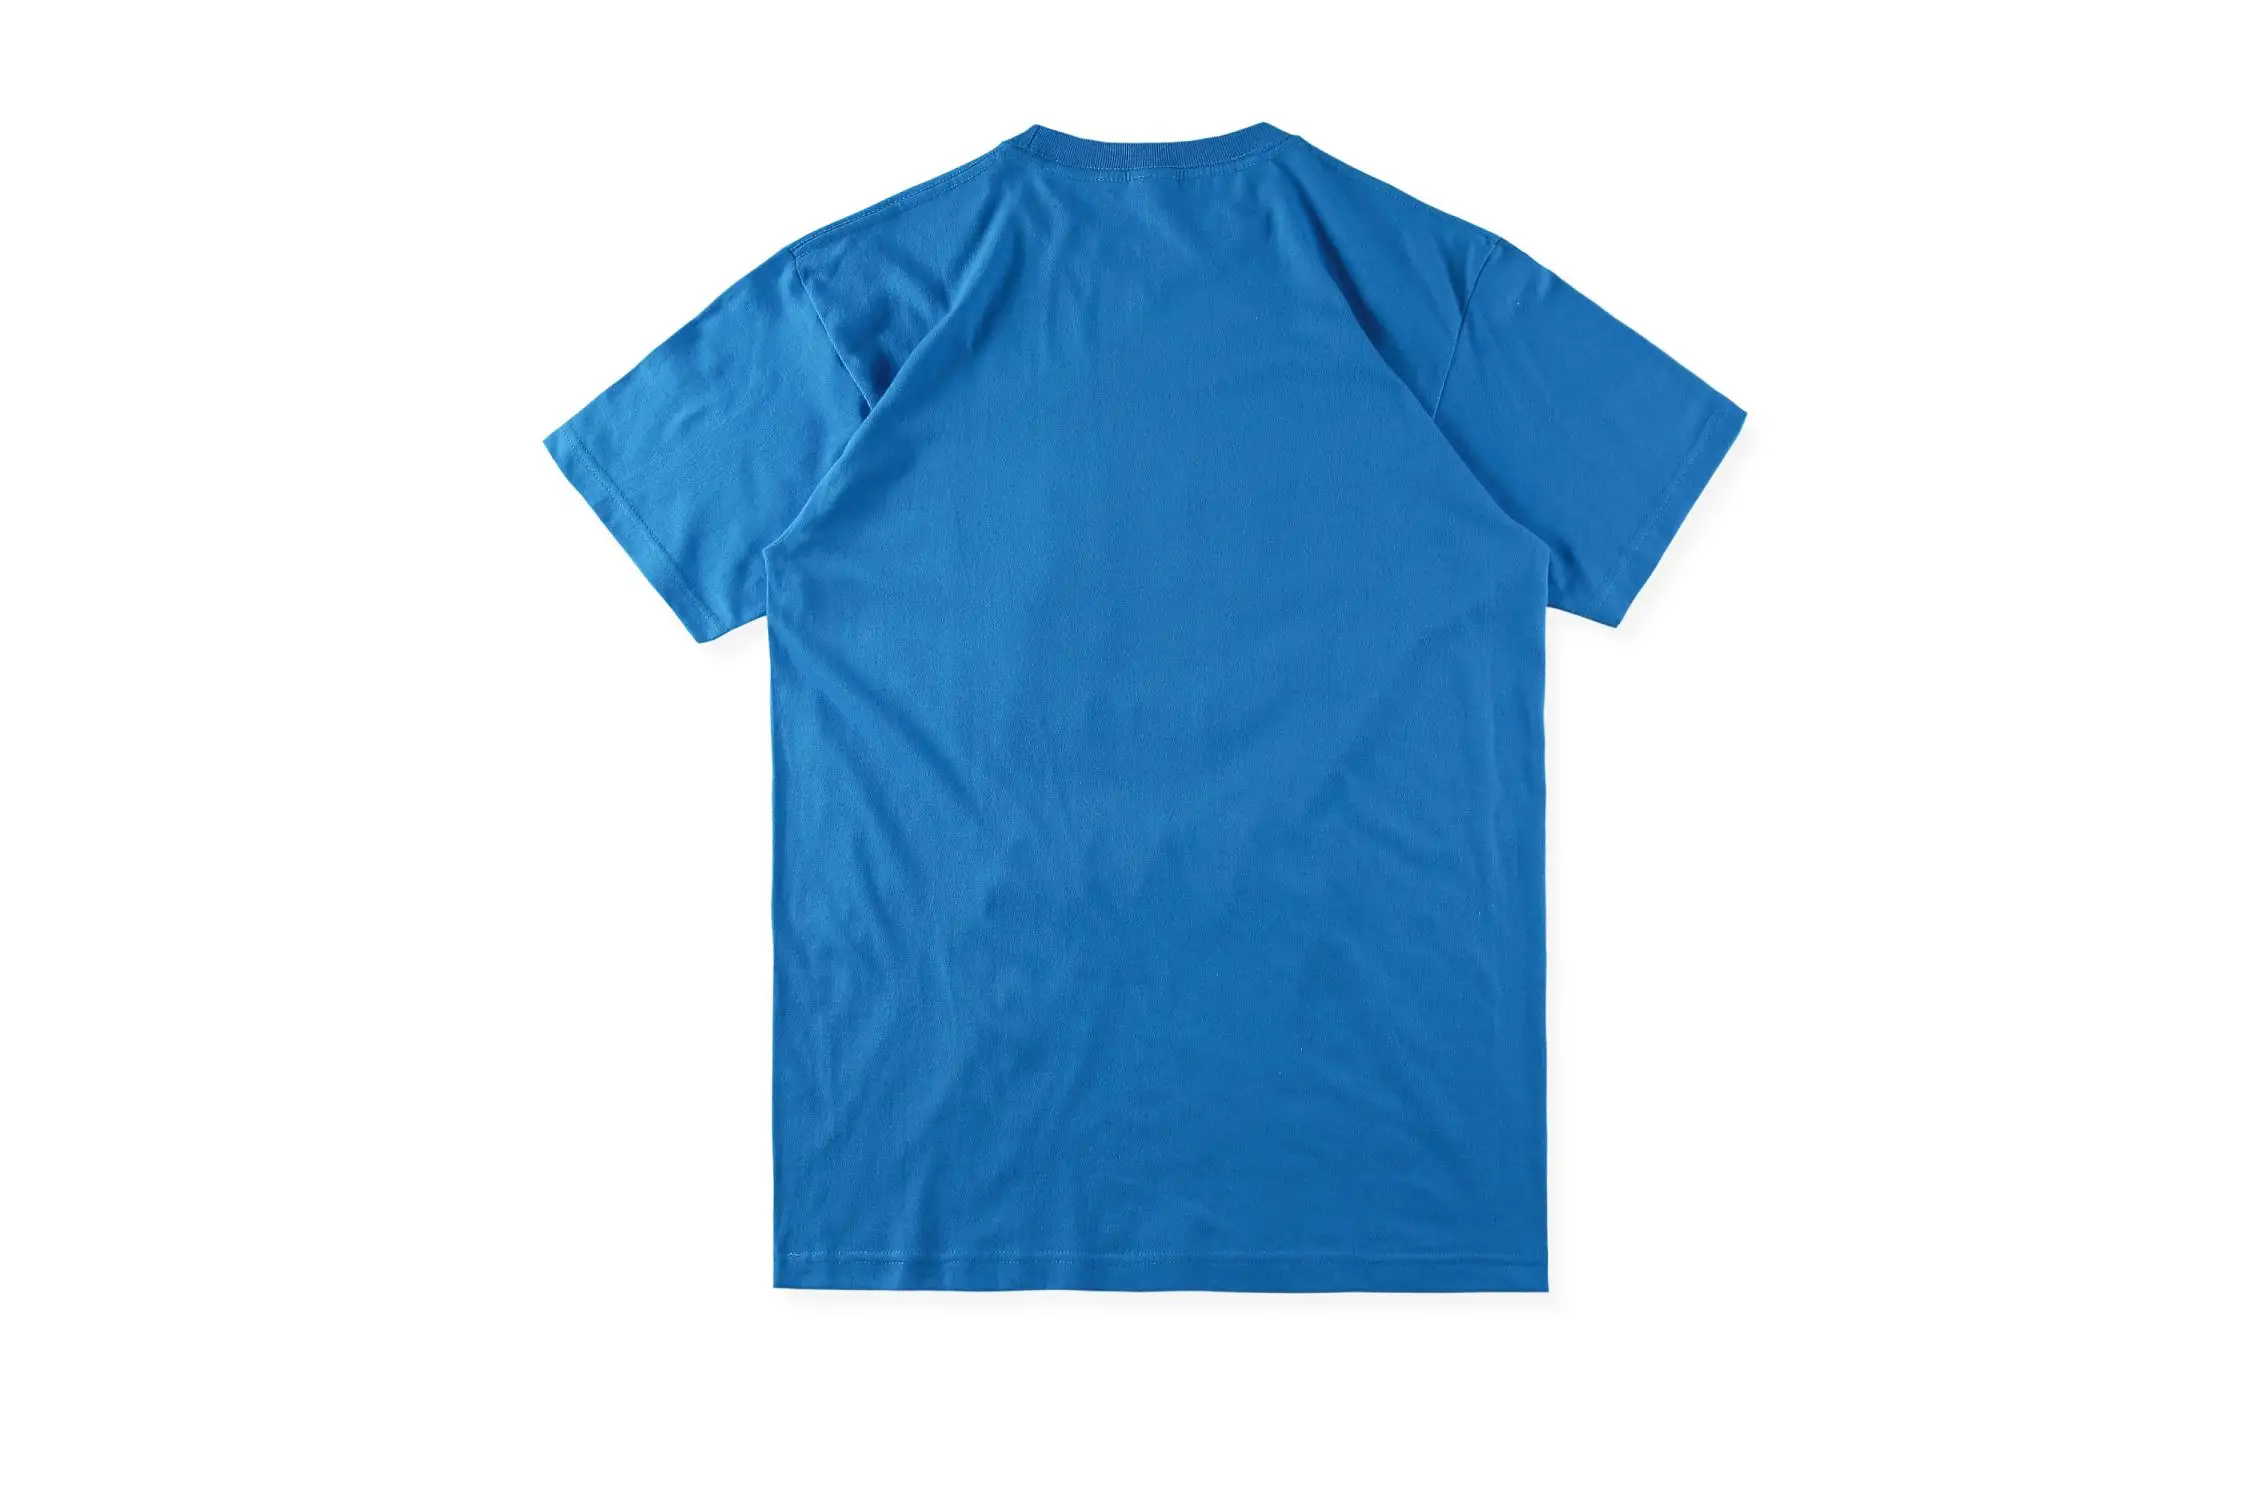 19SS Трэвиса Скотта Astroworld нет прохожих высокое качество Tiedye футболки Джастин Бибер Хип-Хоп Уличная одежда Astroworld футболки для мужчин